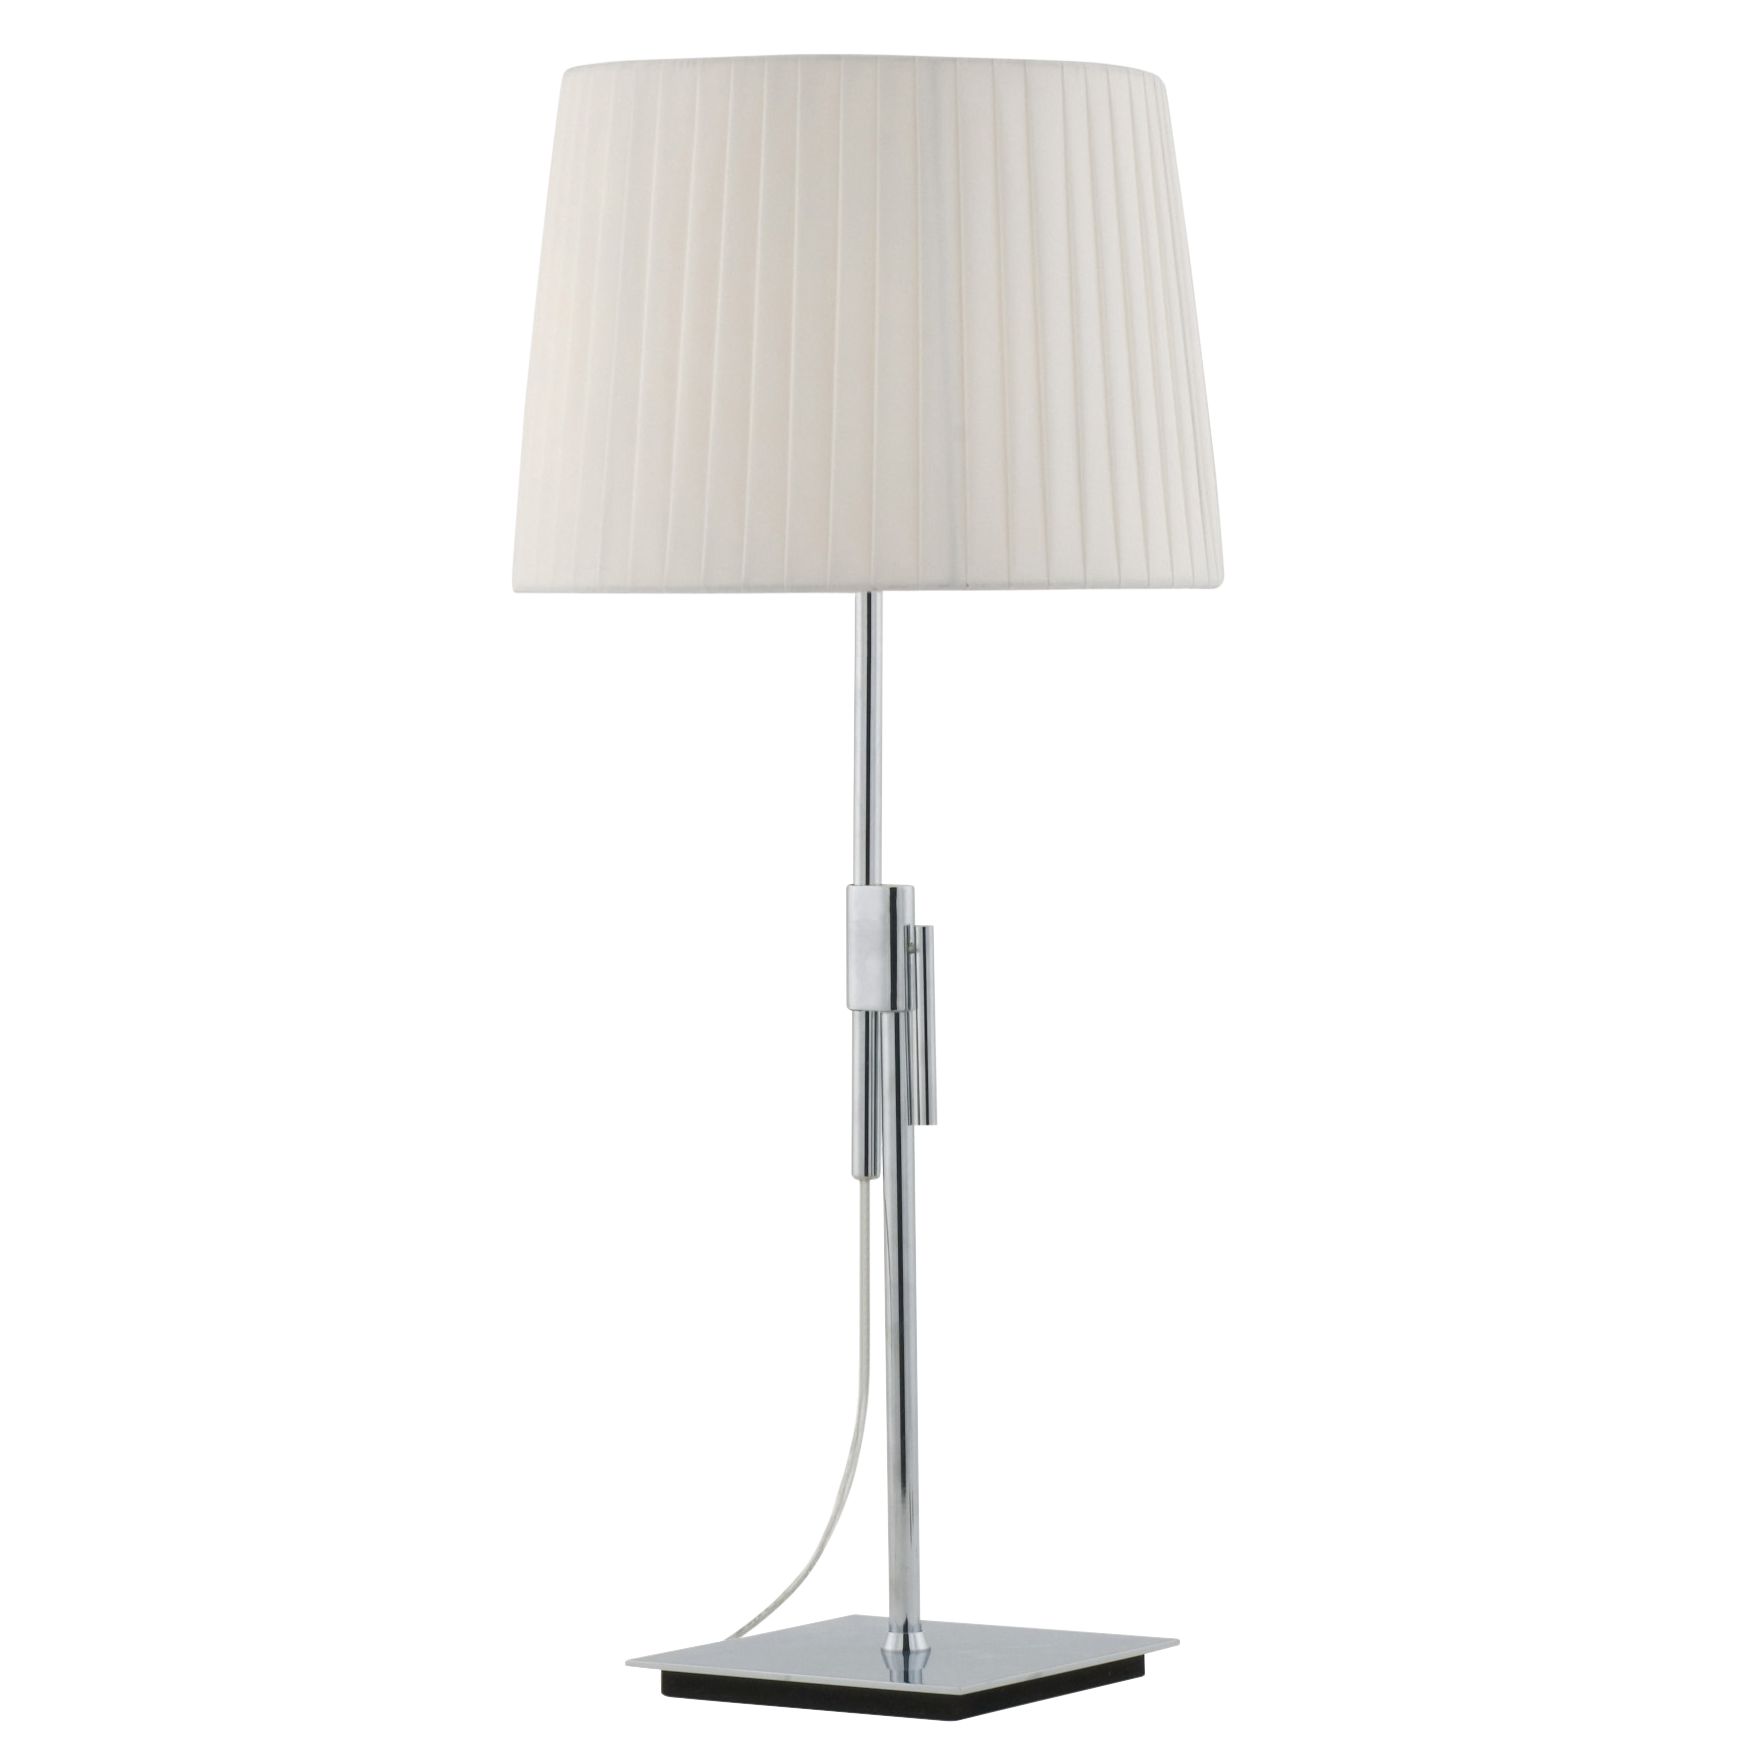 John Lewis Loren Table Lamp